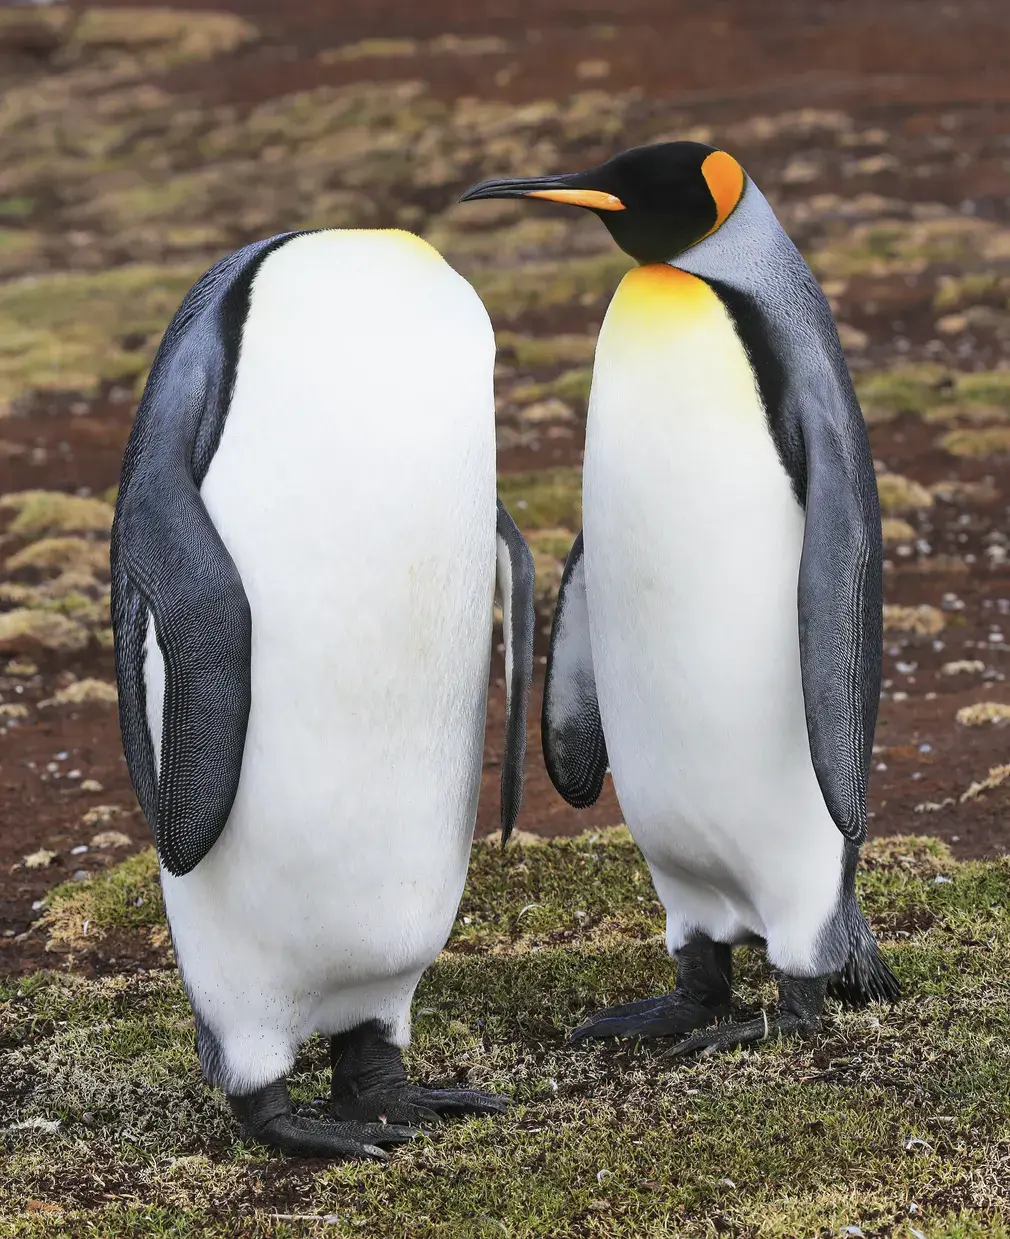 King penguins at Volunteer Point, East Falkland